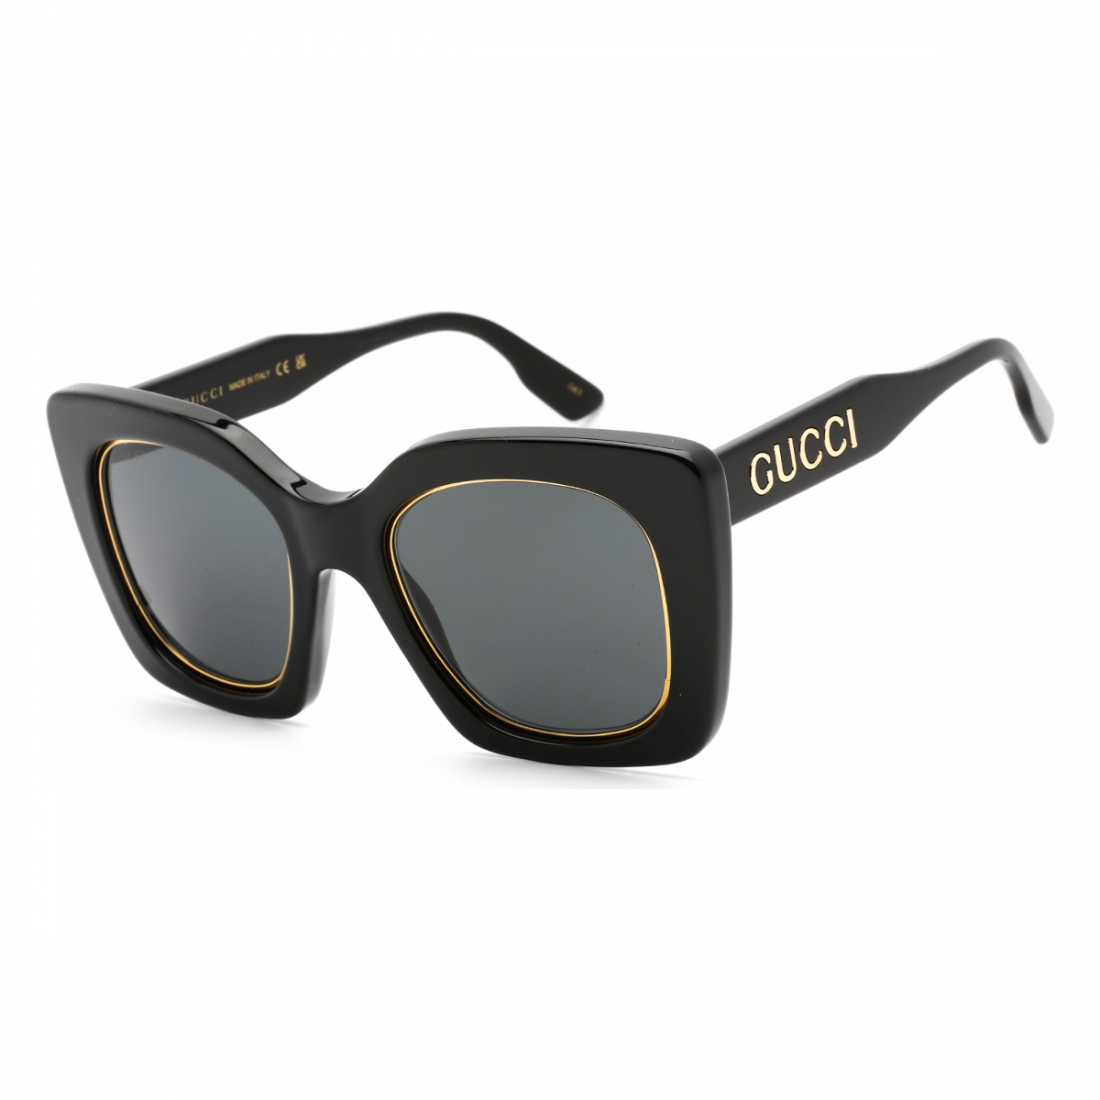 Women's 'GG1151S' Sunglasses